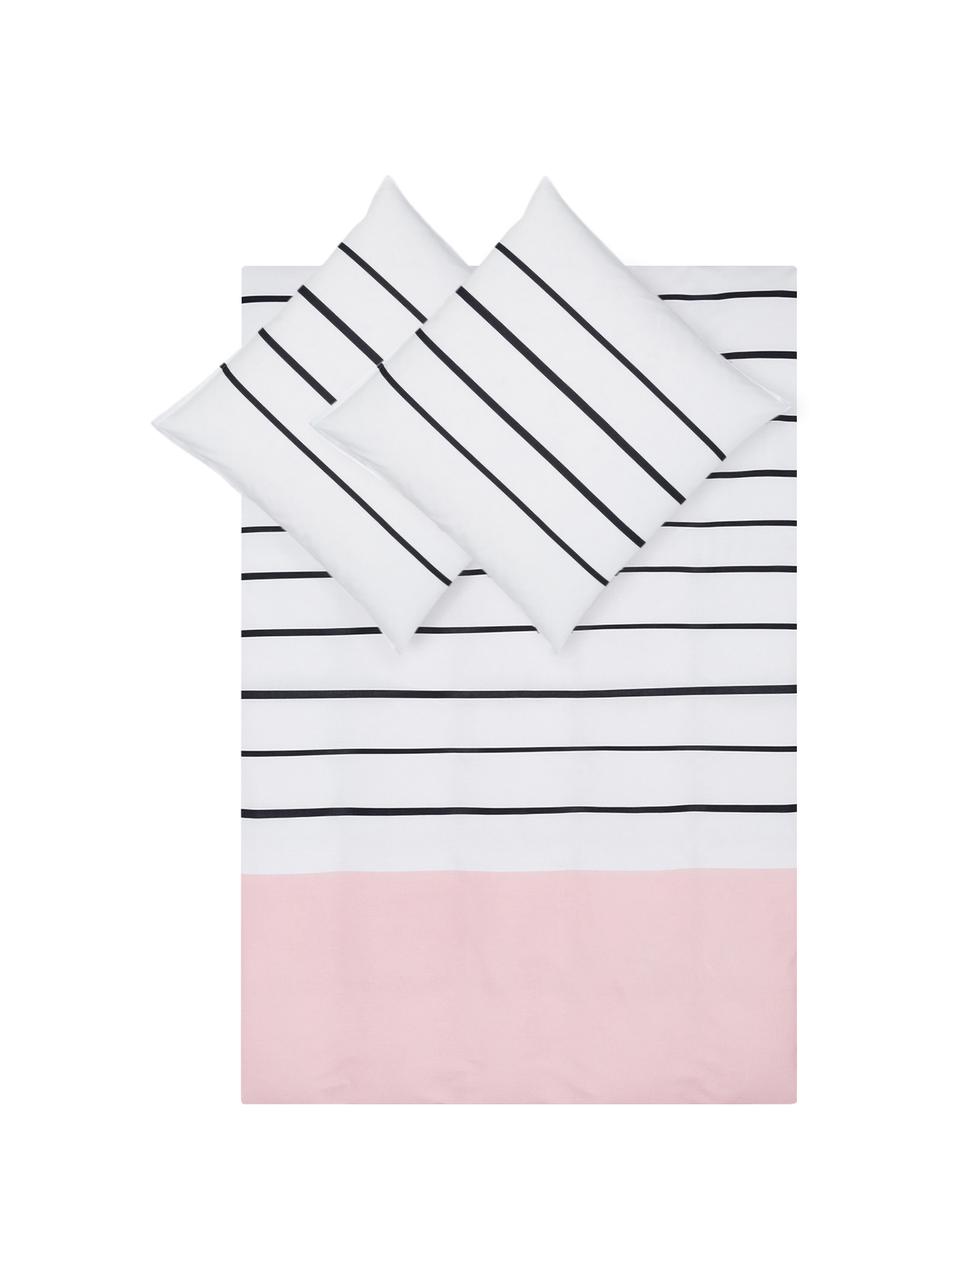 Parure copripiumino reversibile in cotone Blush, Cotone, Bianco, nero, rosa, 200 x 200 cm + 2 federe 50 x 80 cm